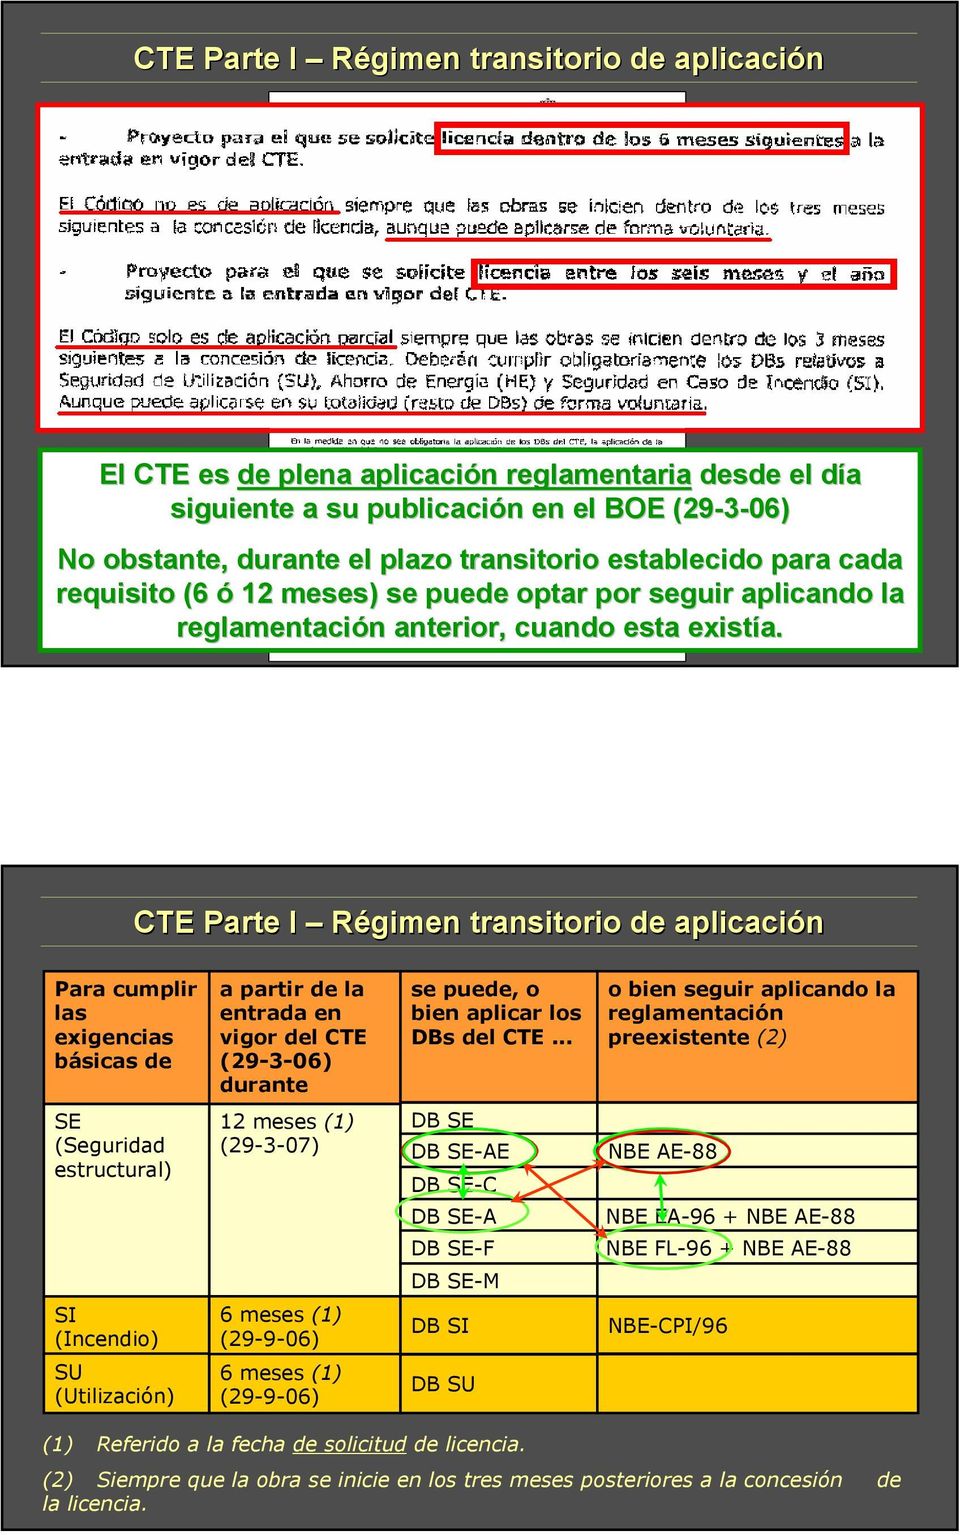 CTE Parte I Régimen transitorio de aplicación Para cumplir las exigencias básicas de a partir de la entrada en vigor del CTE (29-3-06) durante se puede, o bien aplicar los DBs del CTE.